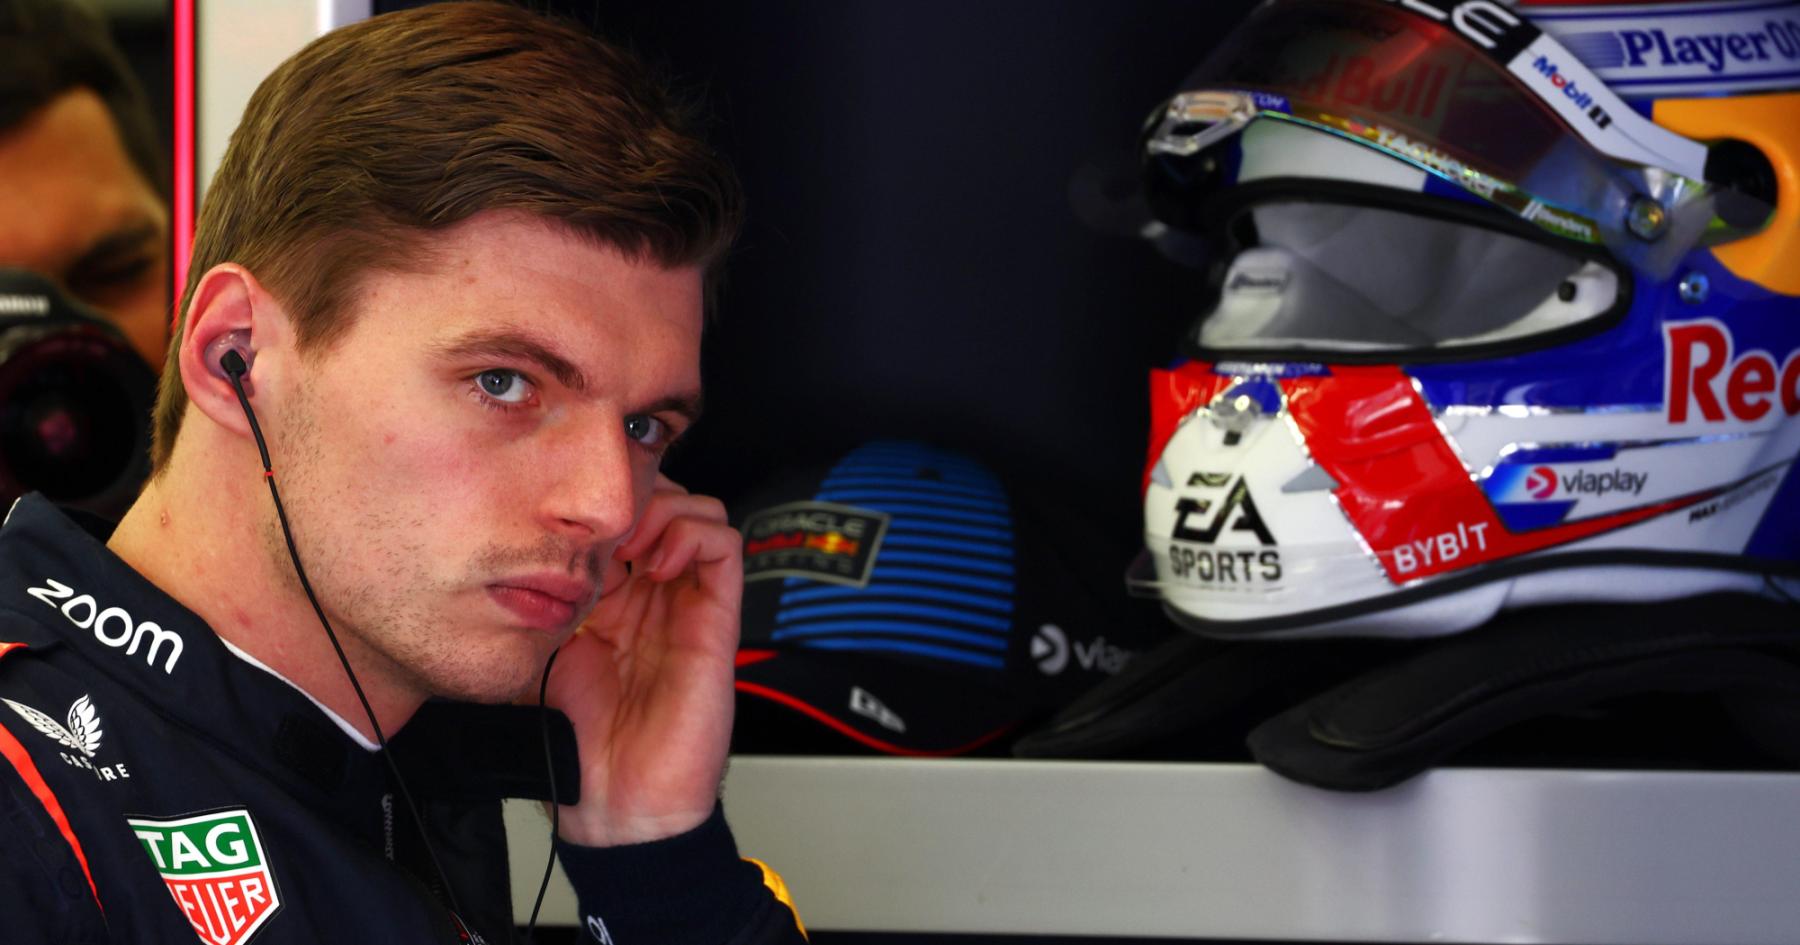 F1 in Turmoil: Impending Verstappen Departure Sparks Team Turbulence at Red Bull